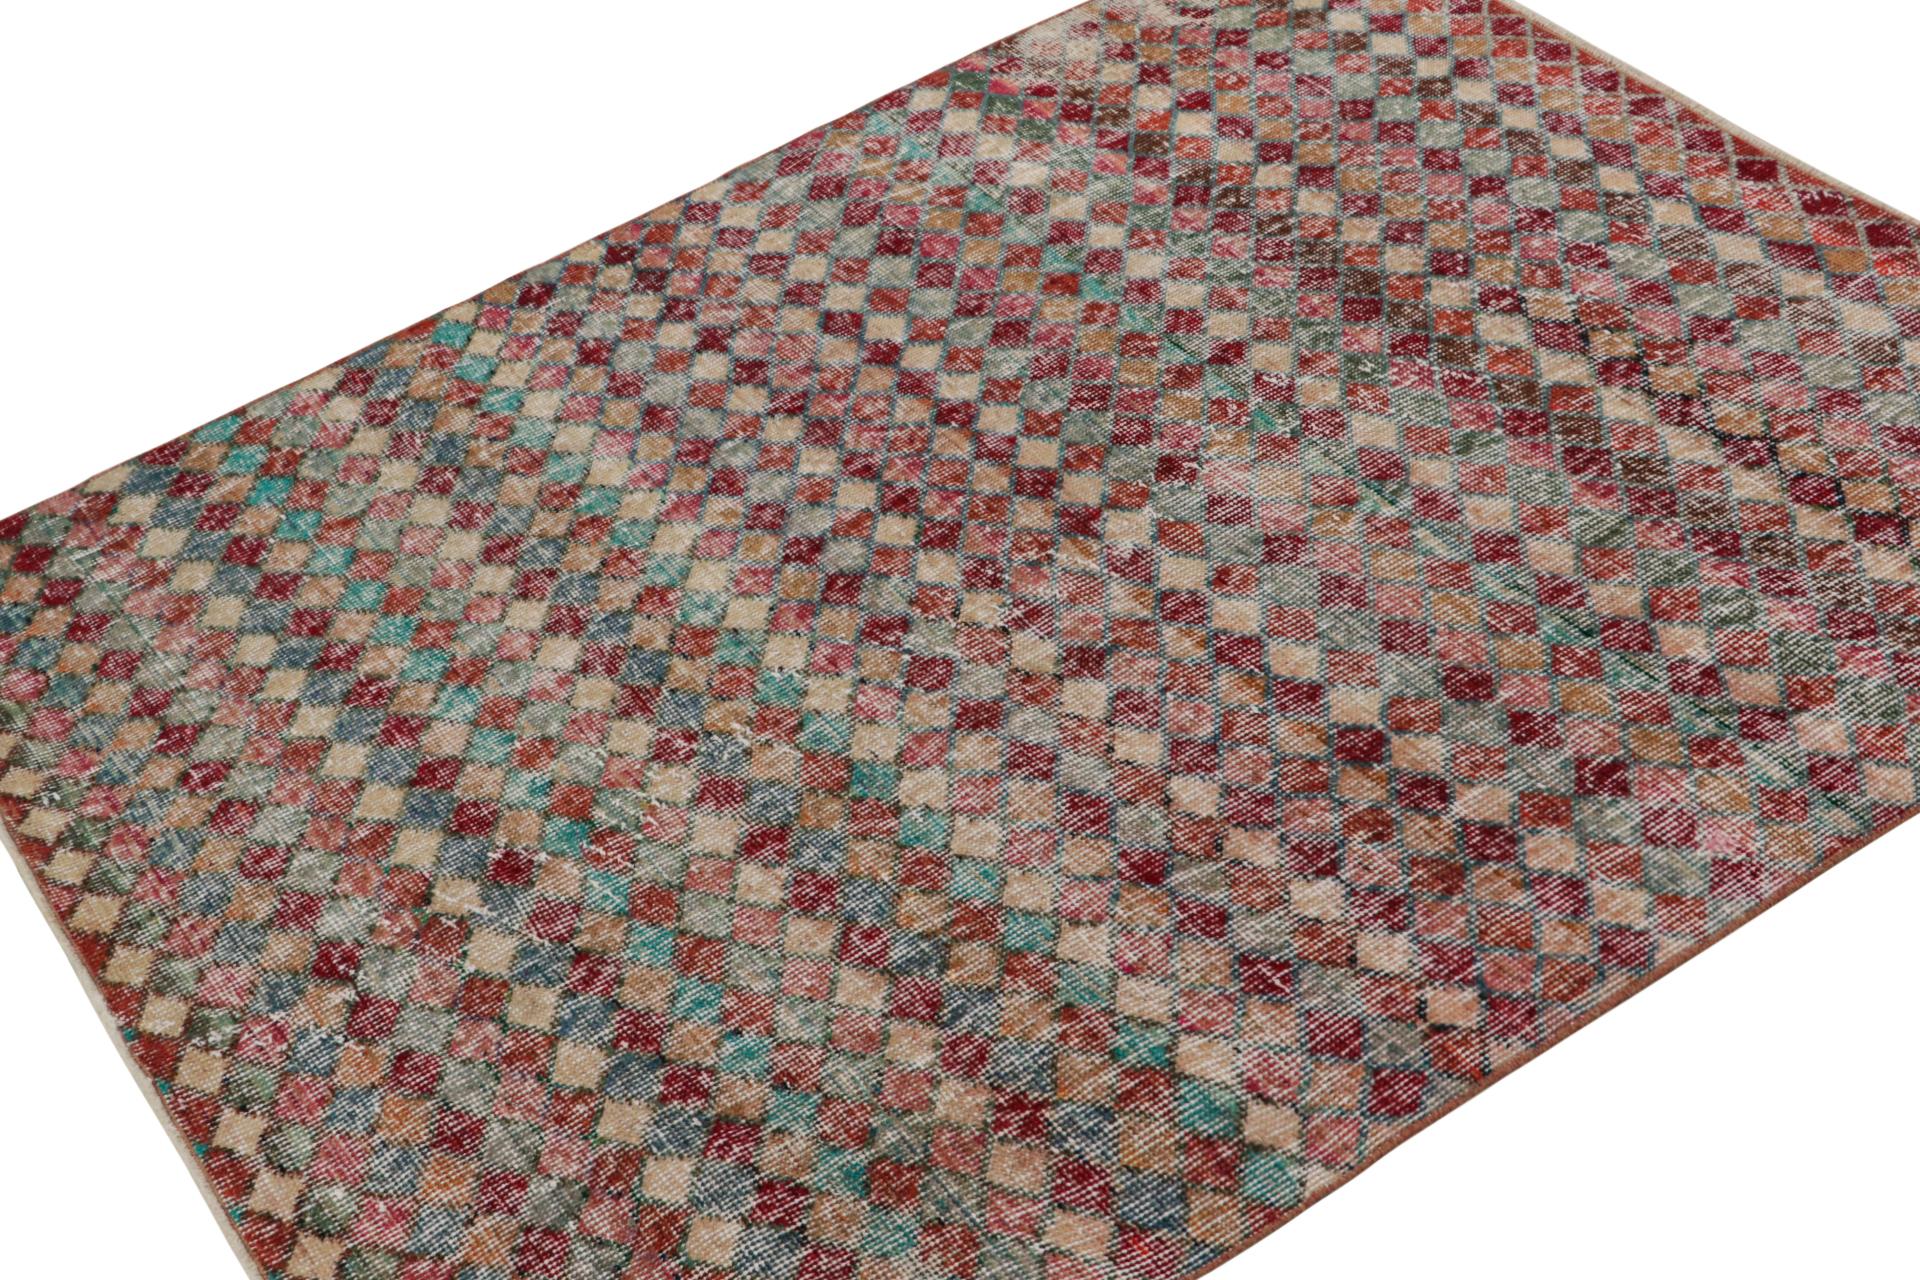 Dieser handgeknüpfte Art-Déco-Teppich im Format 4x5 aus Wolle (ca. 1960-1970) ist eine Interpretation des Art-Déco und des Kubismus aus der Mitte des Jahrhunderts, mit Zeki Murens begehrtem Sinn für spielerische Farben und Bewegung.

Über das